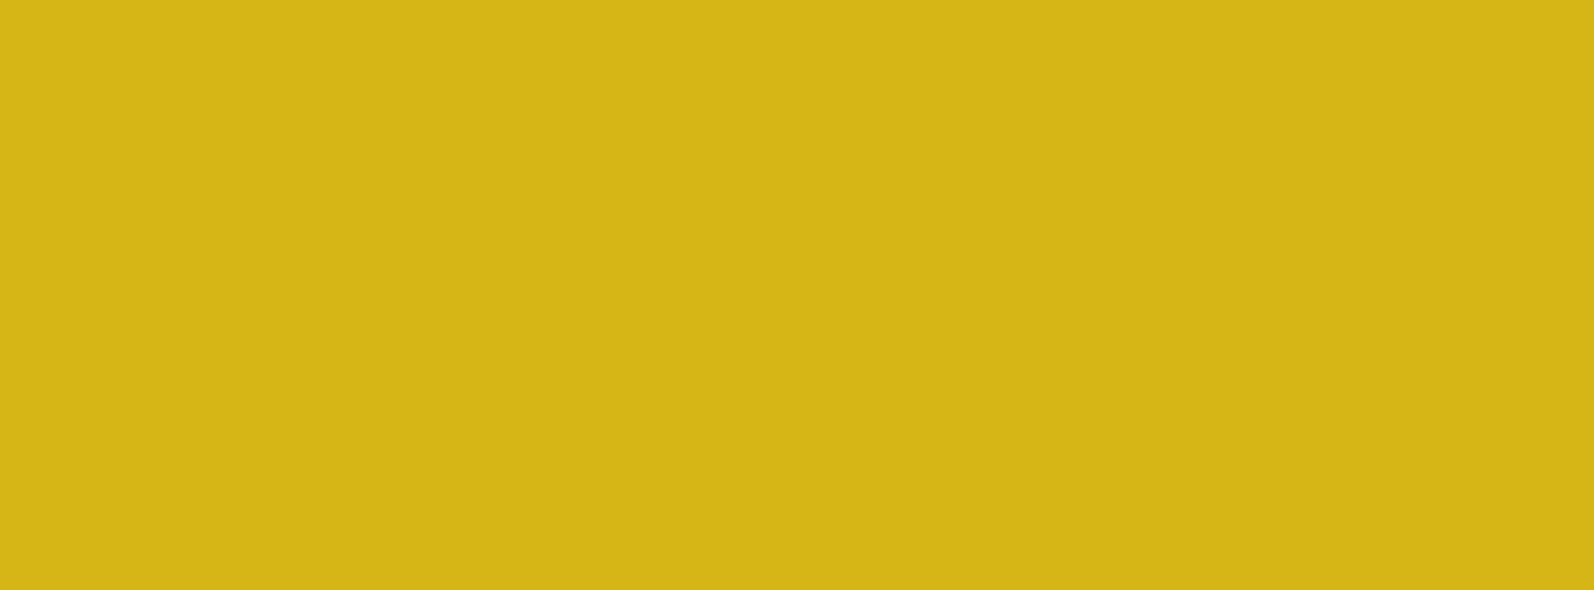 1428 - John Deere Sarı